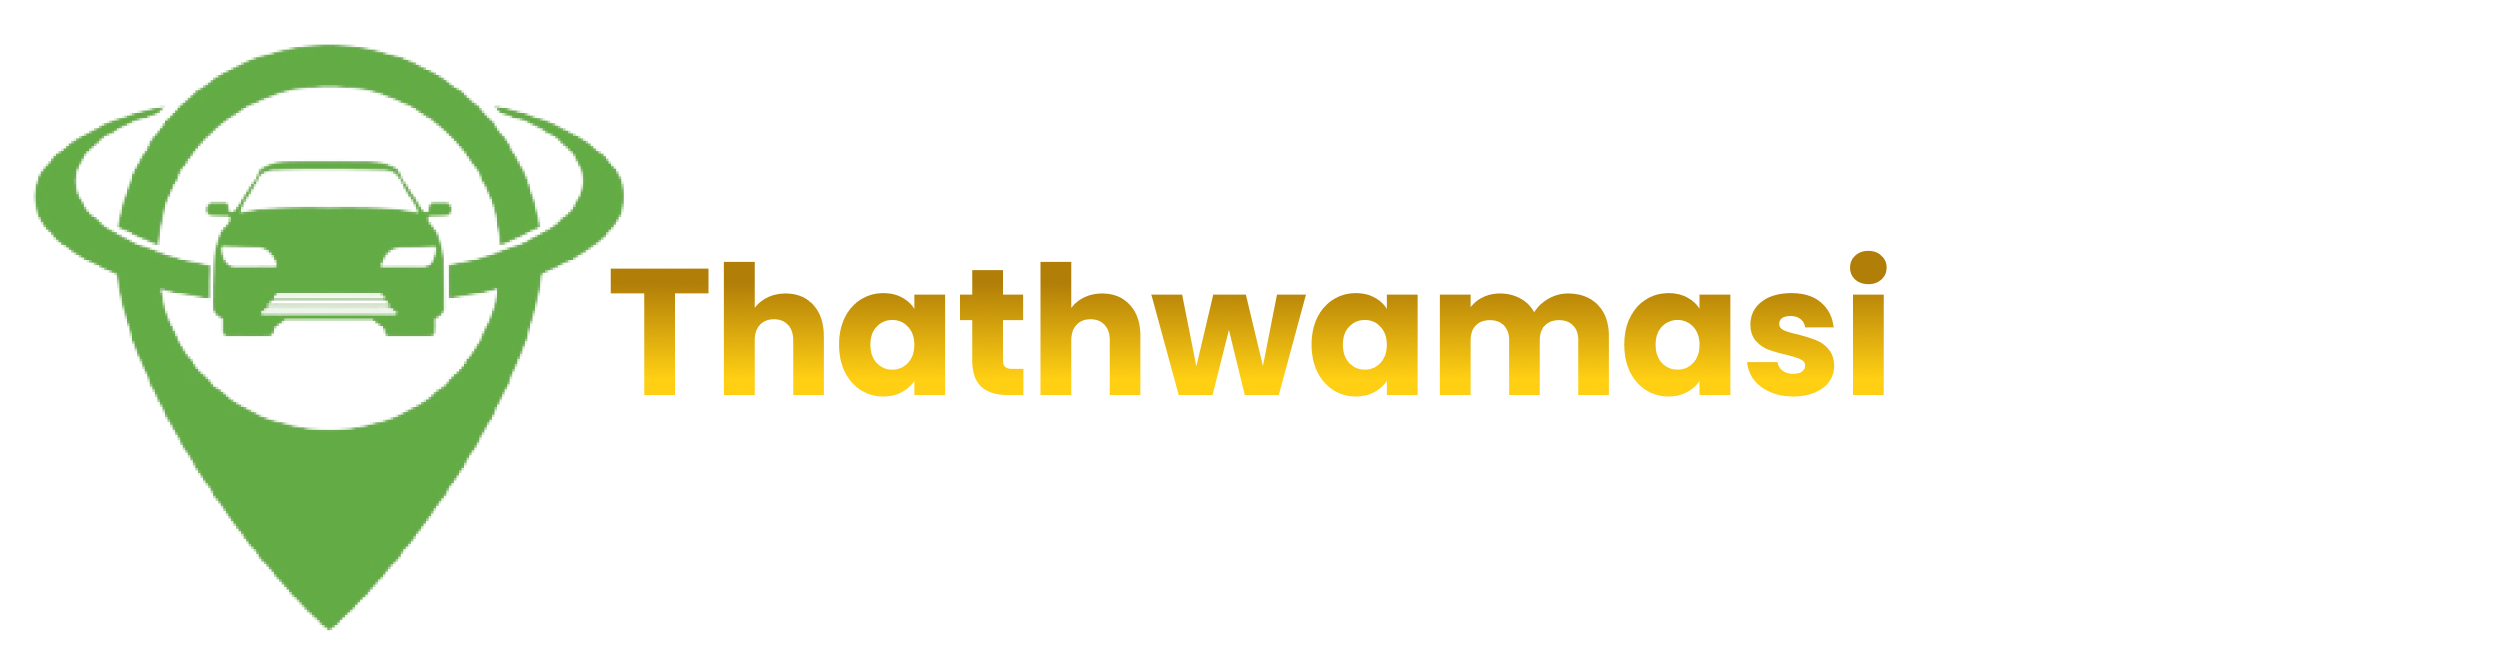 Thathwamasi Tour's